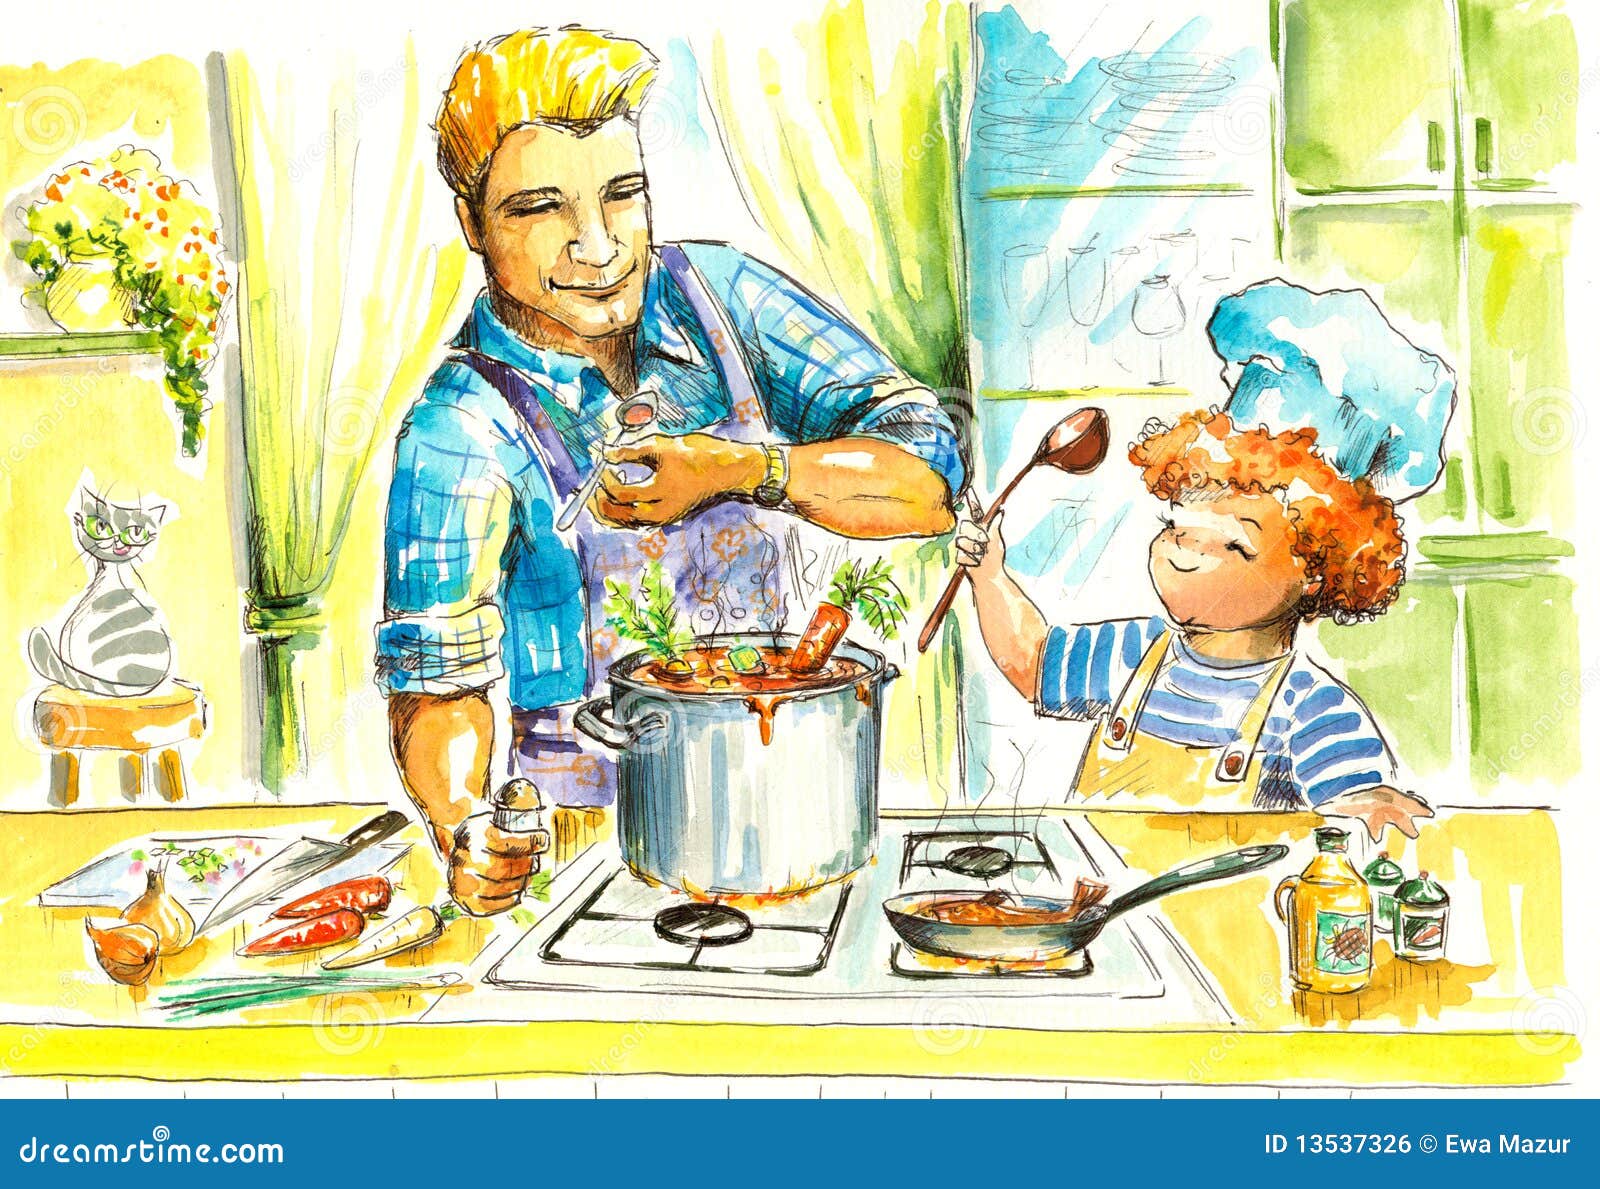 Приходит сын на кухню. Мамин помощник рисунок. Папа готовит суп. Иллюстрация мальчик на кухне. Сюжетная картина семейный ужи.